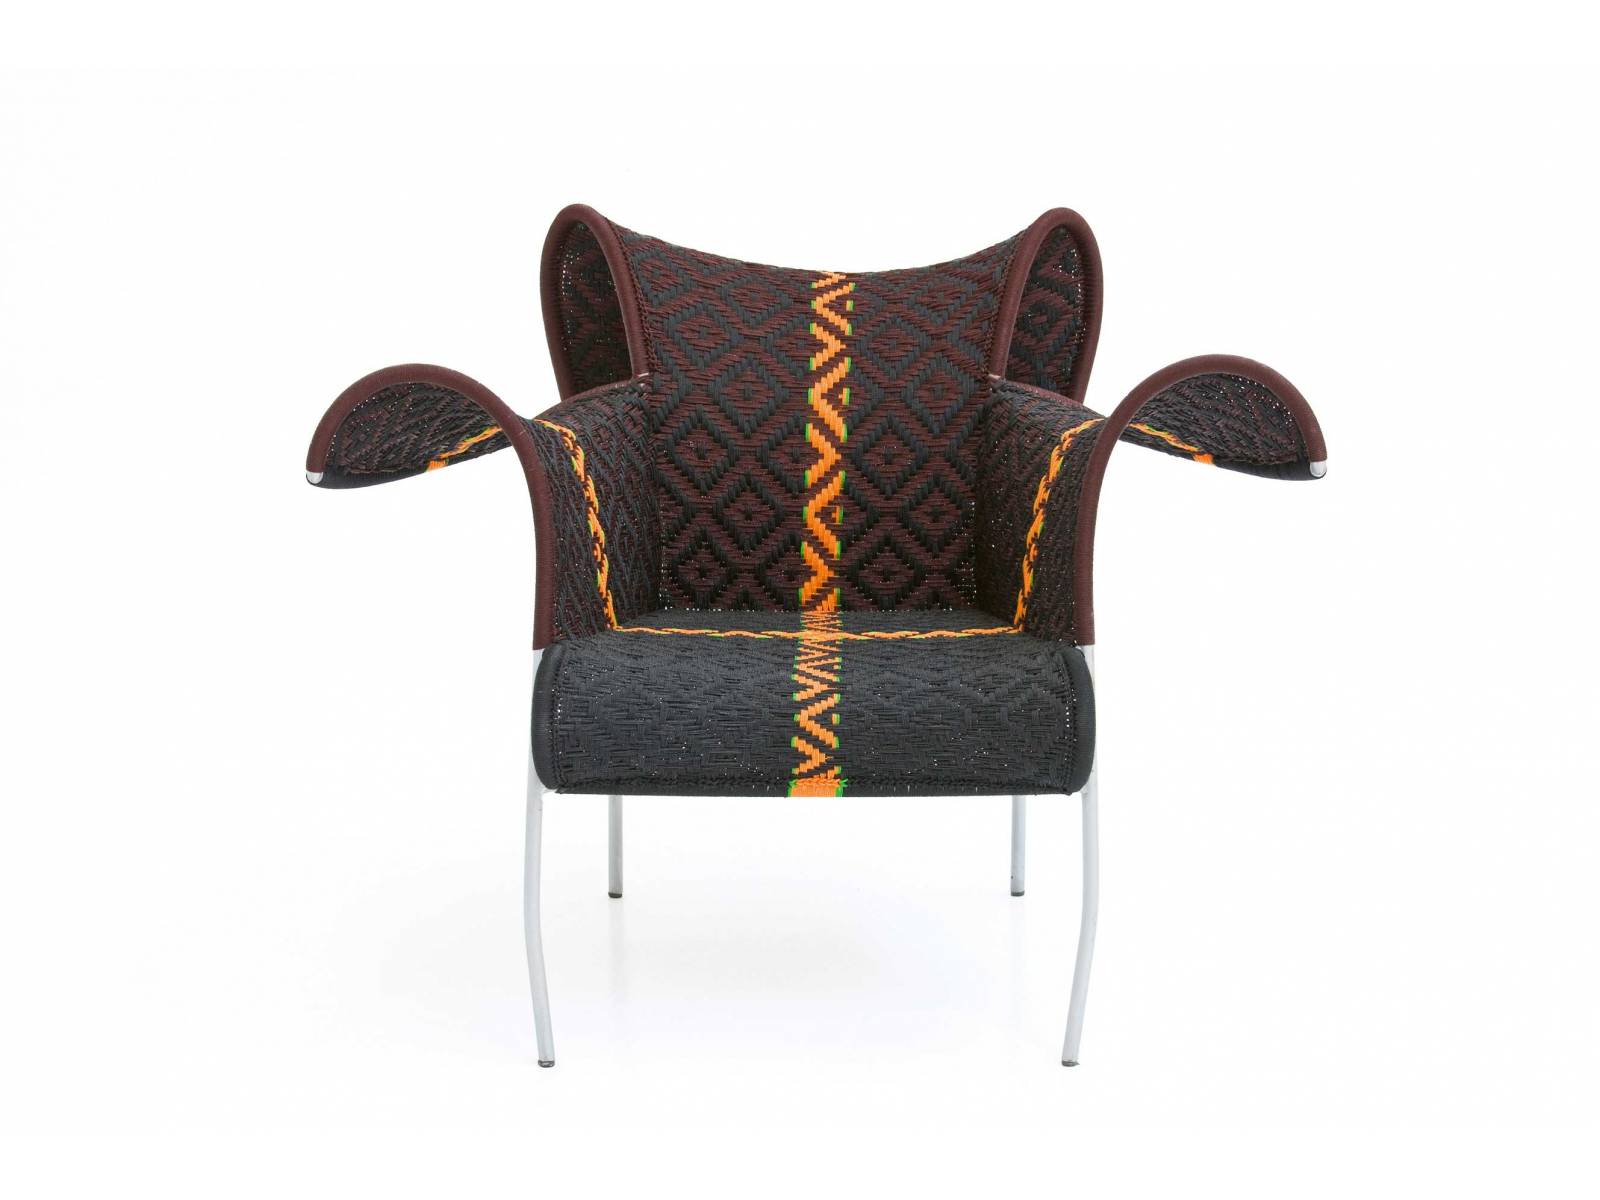 Für «M&#039;Afrique» durften seit 2009 schon einige DesinerInnen einen Entwurf beisteuern. Der Stuhl «Ibiscus» stammt von Dominique Pétot und wird wie alle Stücke der Kollektion im Atelier im Senegal unter der künstlerischen Leitung von Abdou Salam Gaye hergestellt. MOROSO.